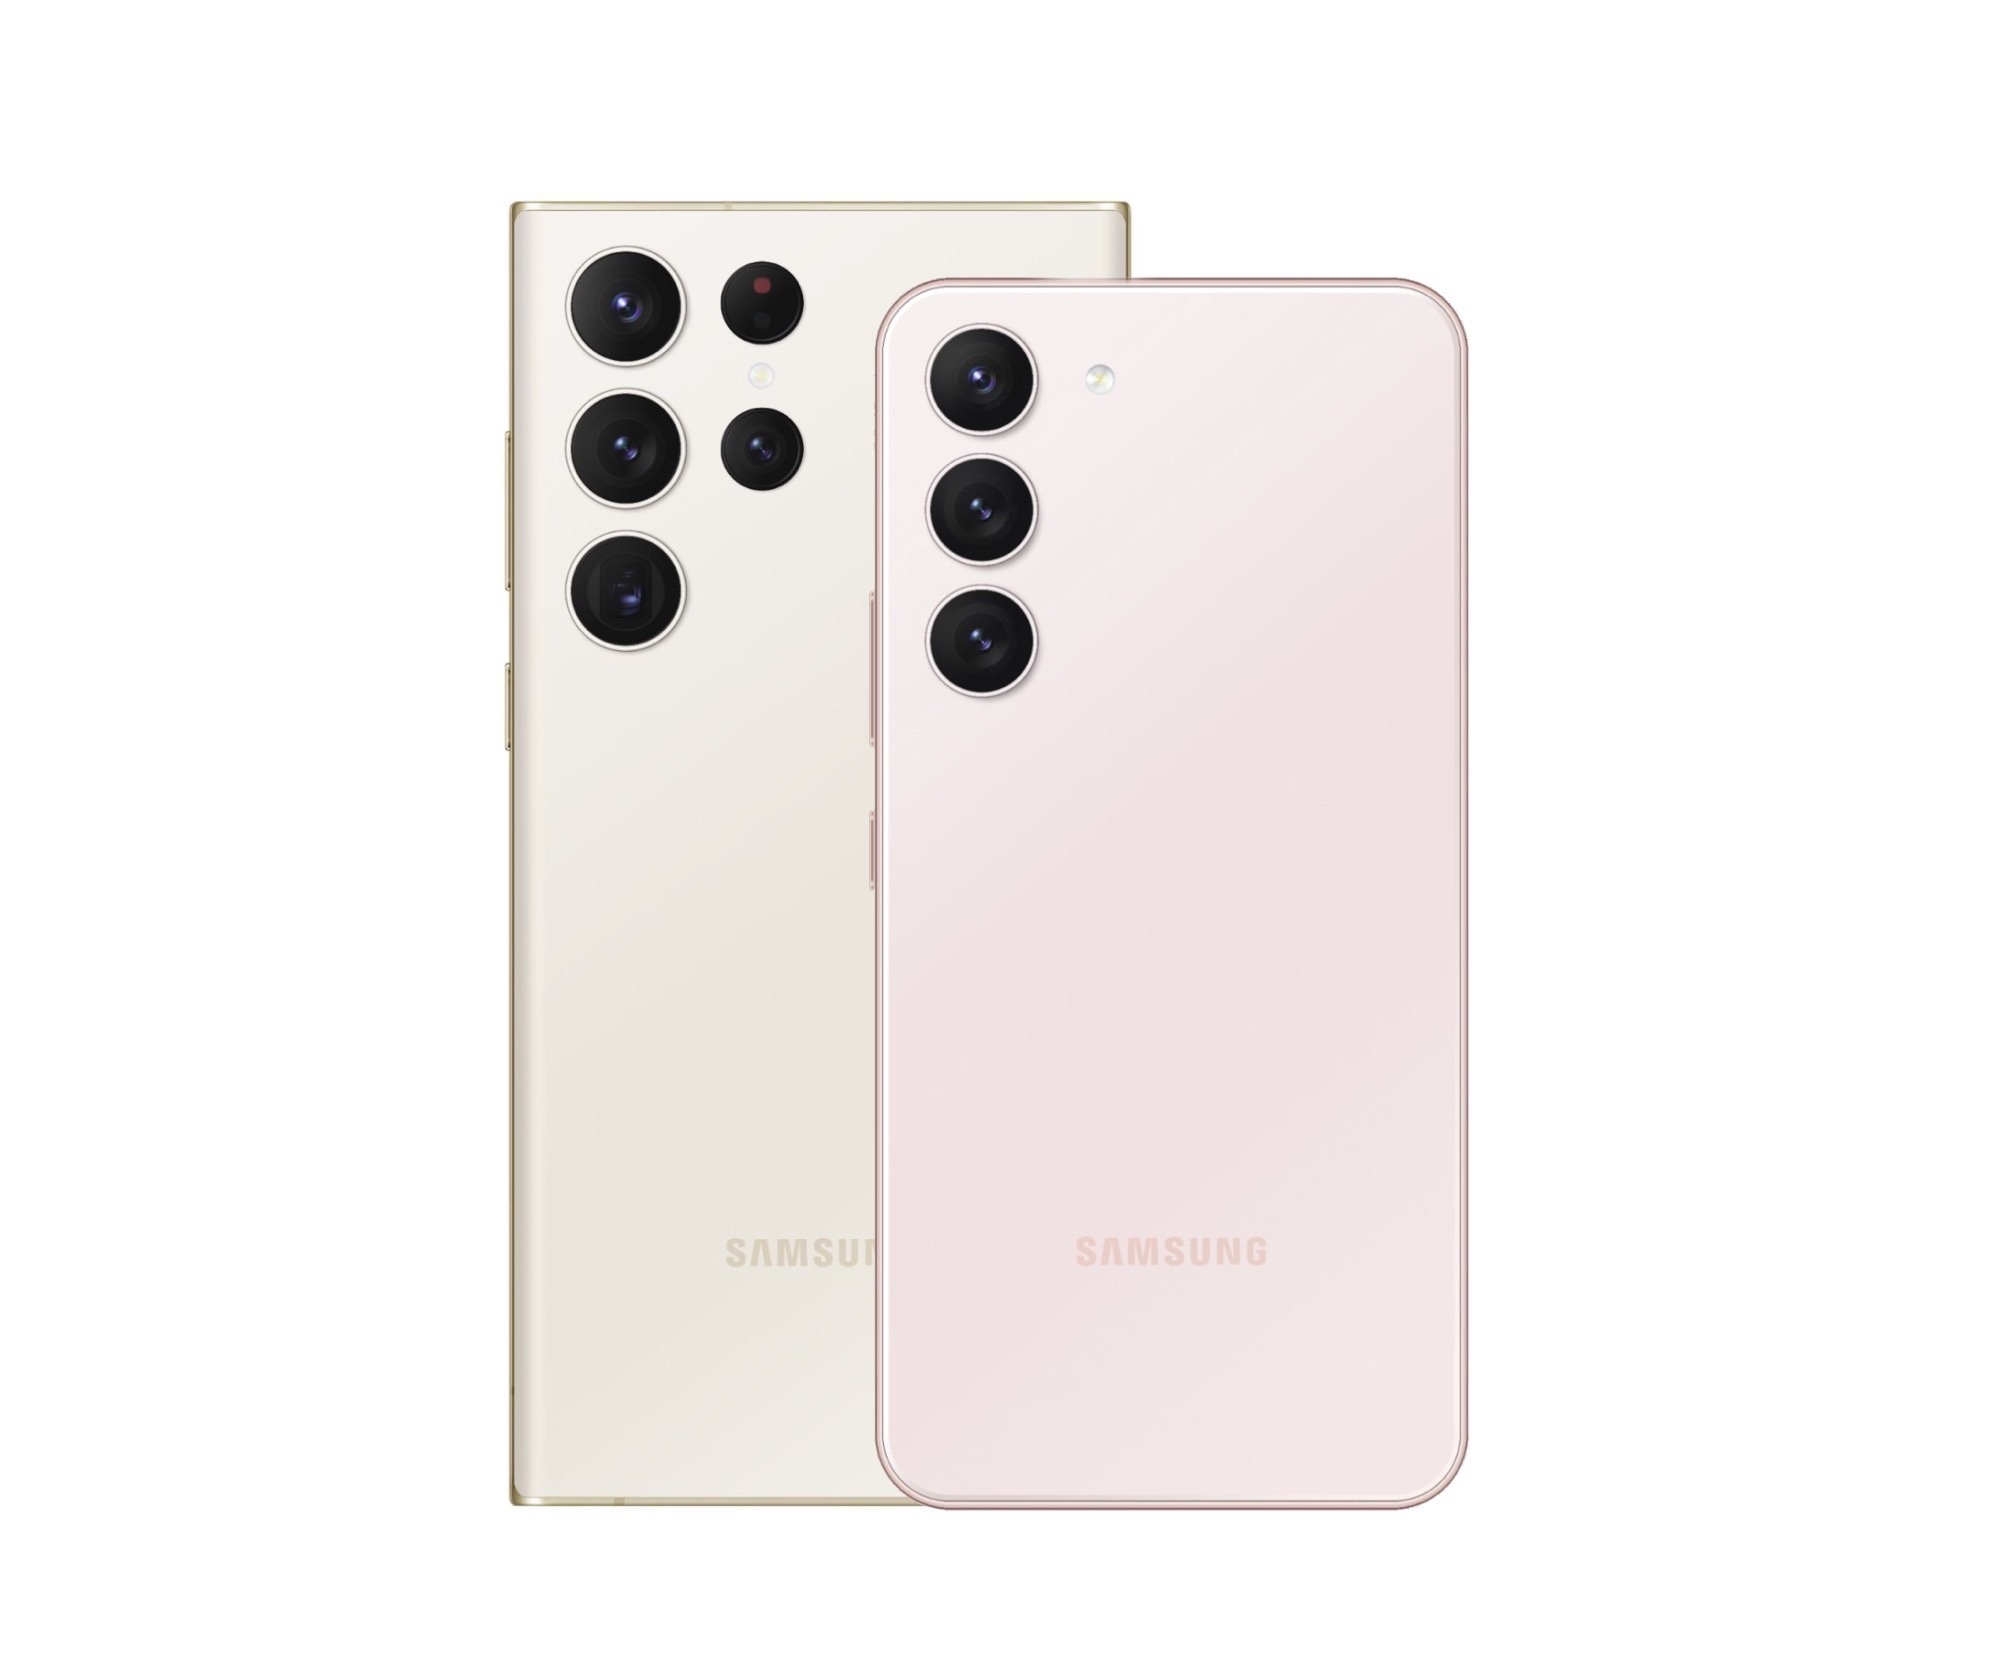 Zdjęcia, które wyciekły, pokazują Samsunga Galaxy S23 i Galaxy S23 Ultra we wszystkich czterech kolorach